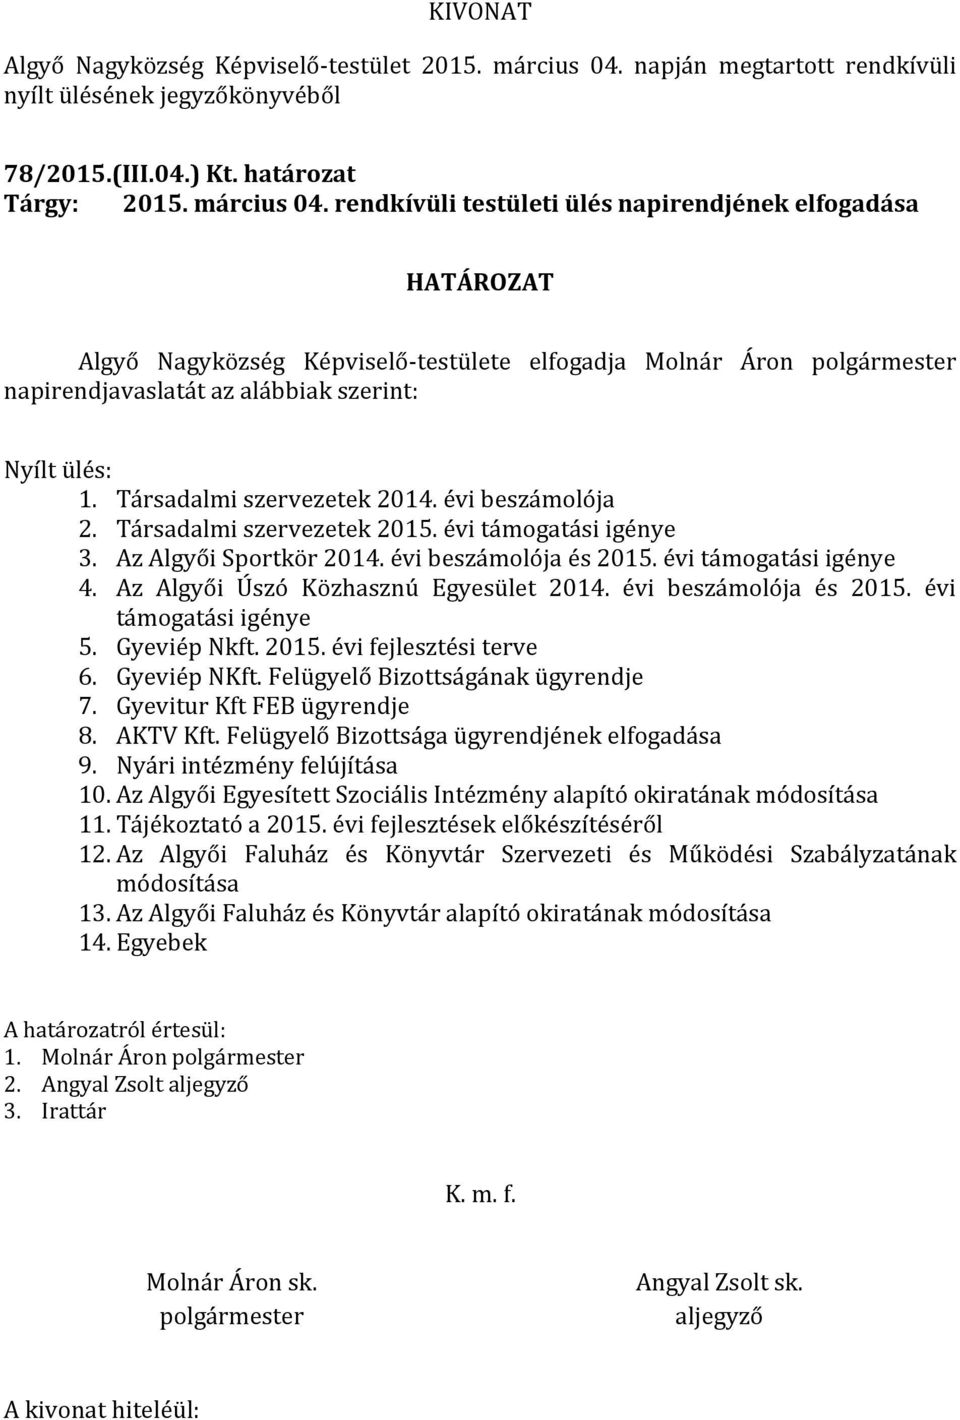 rendkívüli testületi ülés napirendjének elfogadása HATÁROZAT Algyő Nagyközség Képviselő-testülete elfogadja Molnár Áron polgármester napirendjavaslatát az alábbiak szerint: Nyílt ülés: 1.